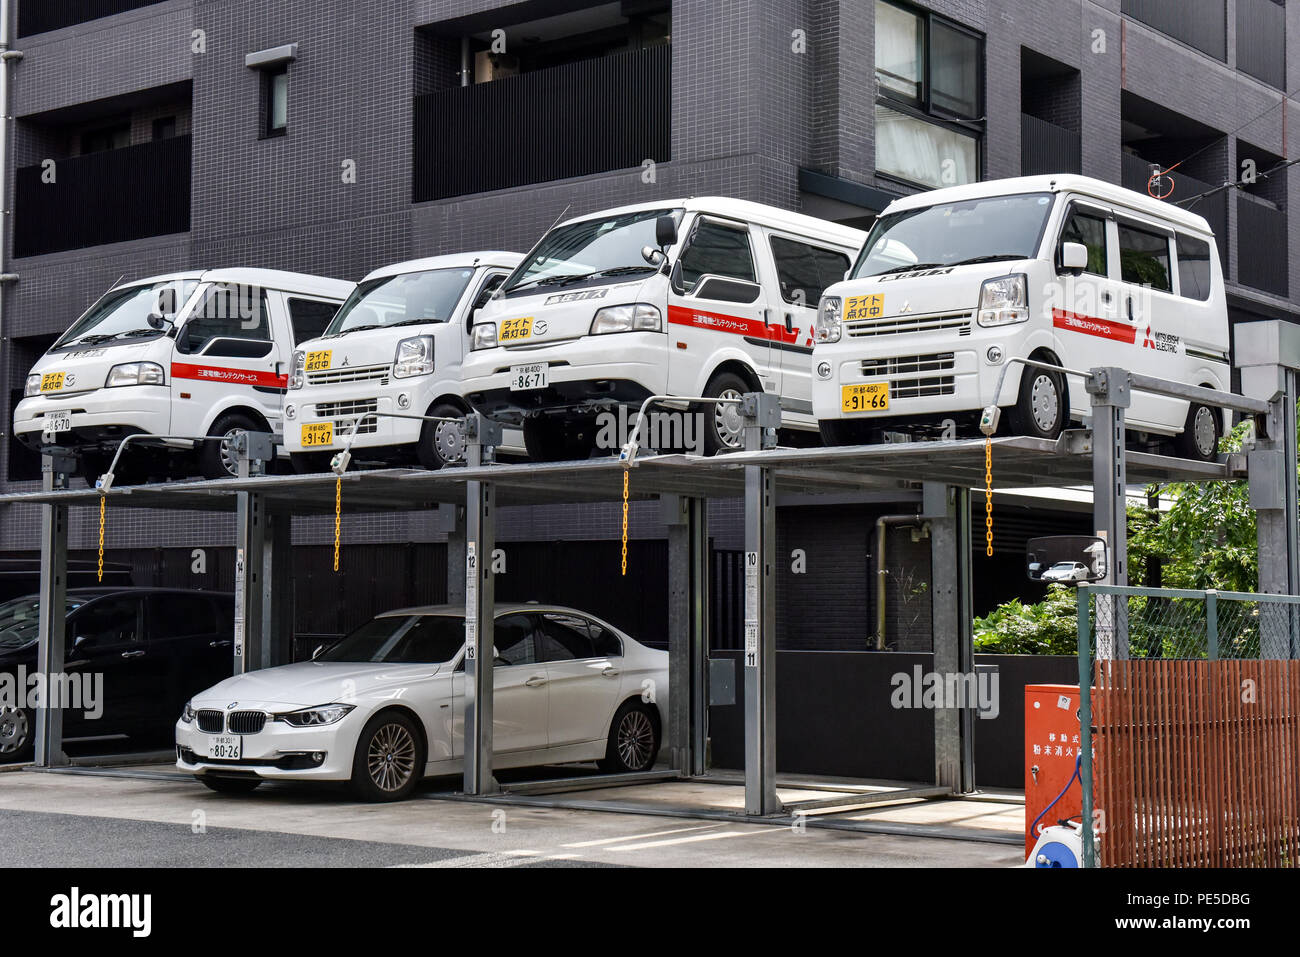 Coches apilados en un aparcamiento de varios pisos debido a la falta de espacio, Kyoto, Japón Foto de stock